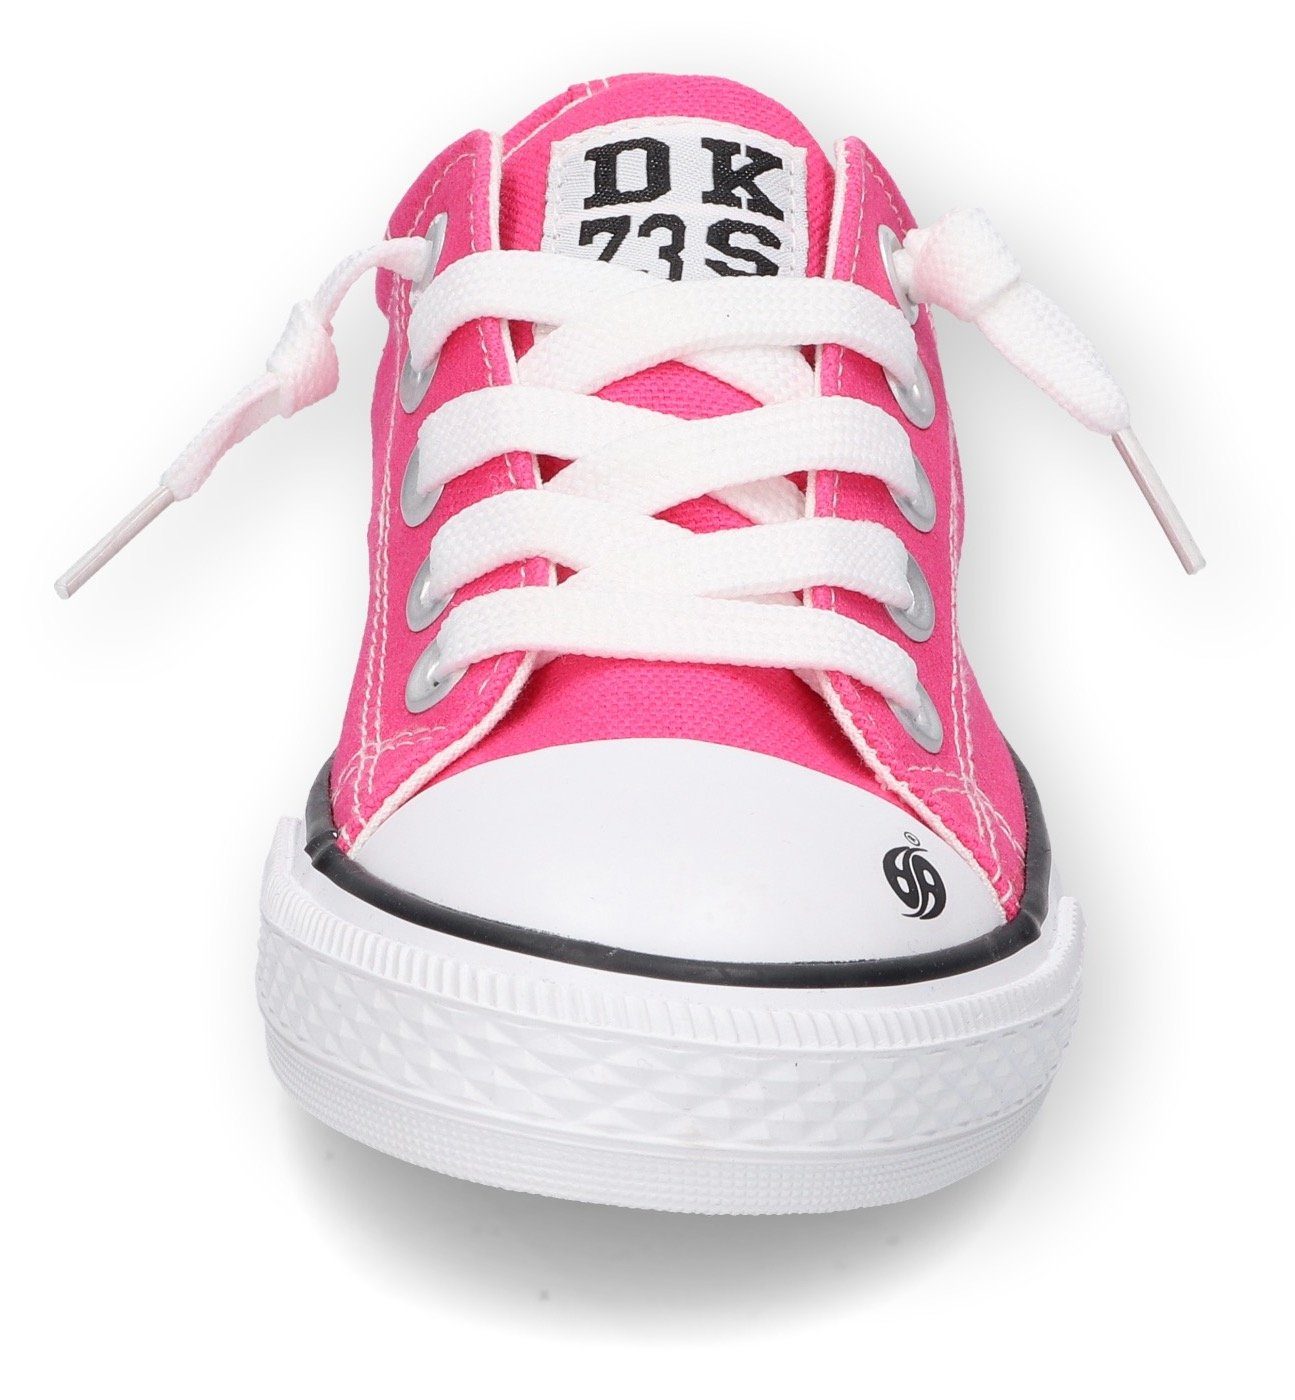 Optik Sneaker Gerli in Dockers by Slip-On pink klassischer